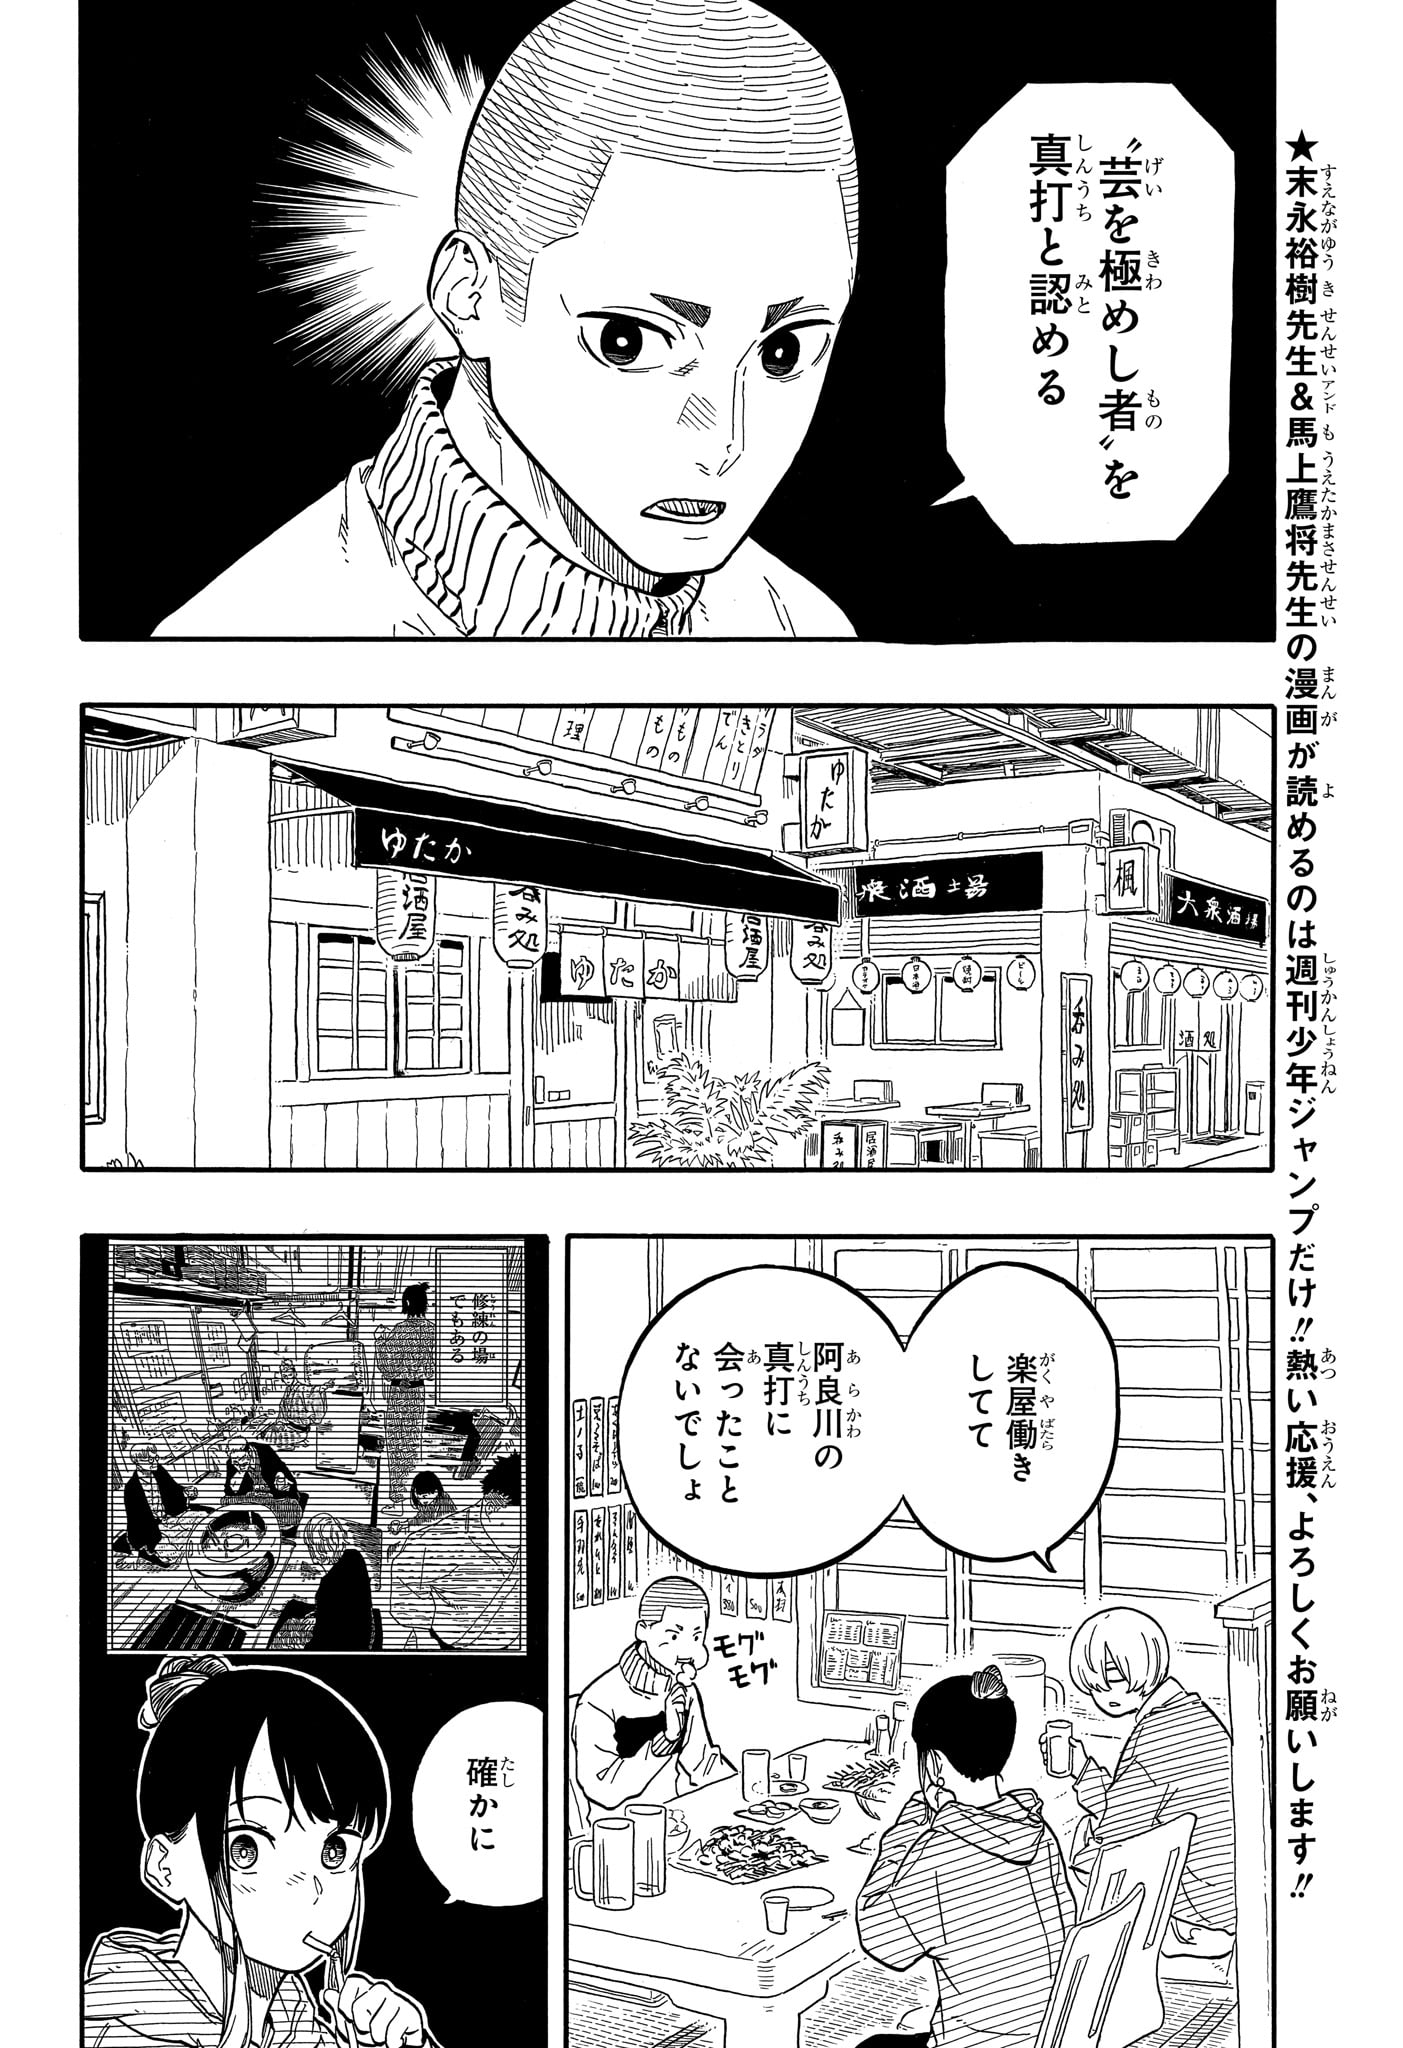 Akane-Banashi - Chapter 108 - Page 2